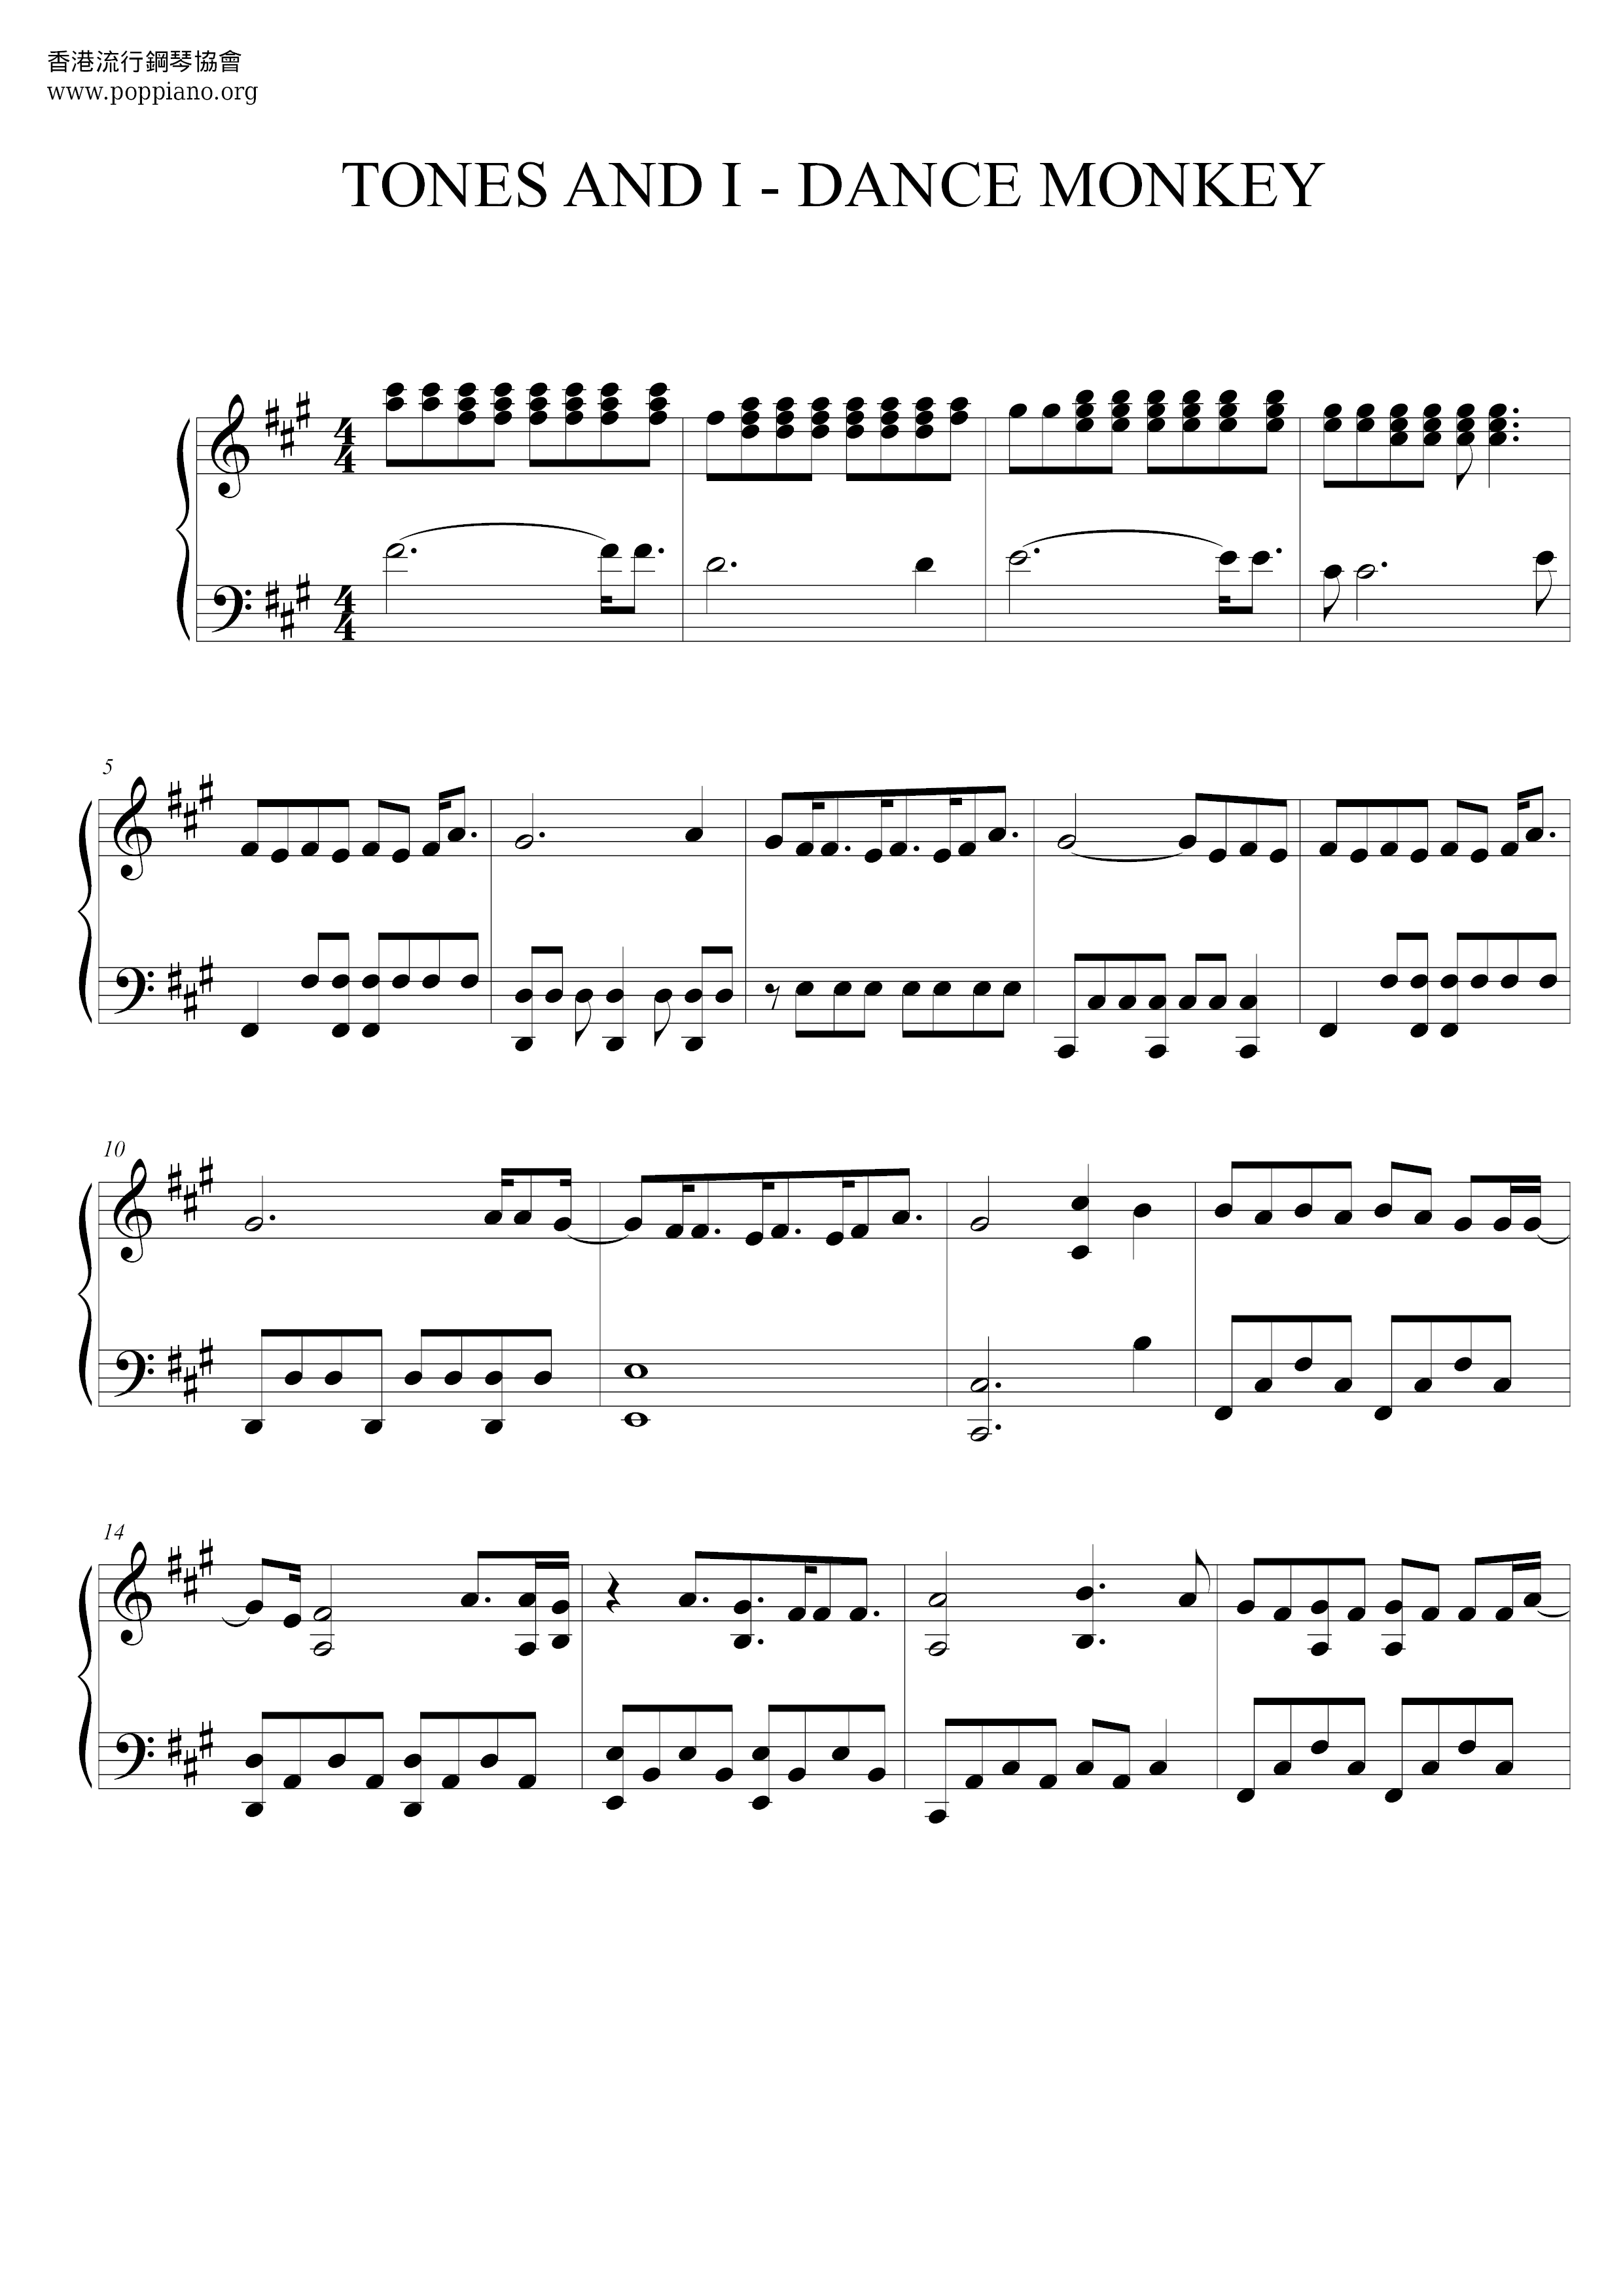 Partition piano Dance Monkey - Space Note gratuite